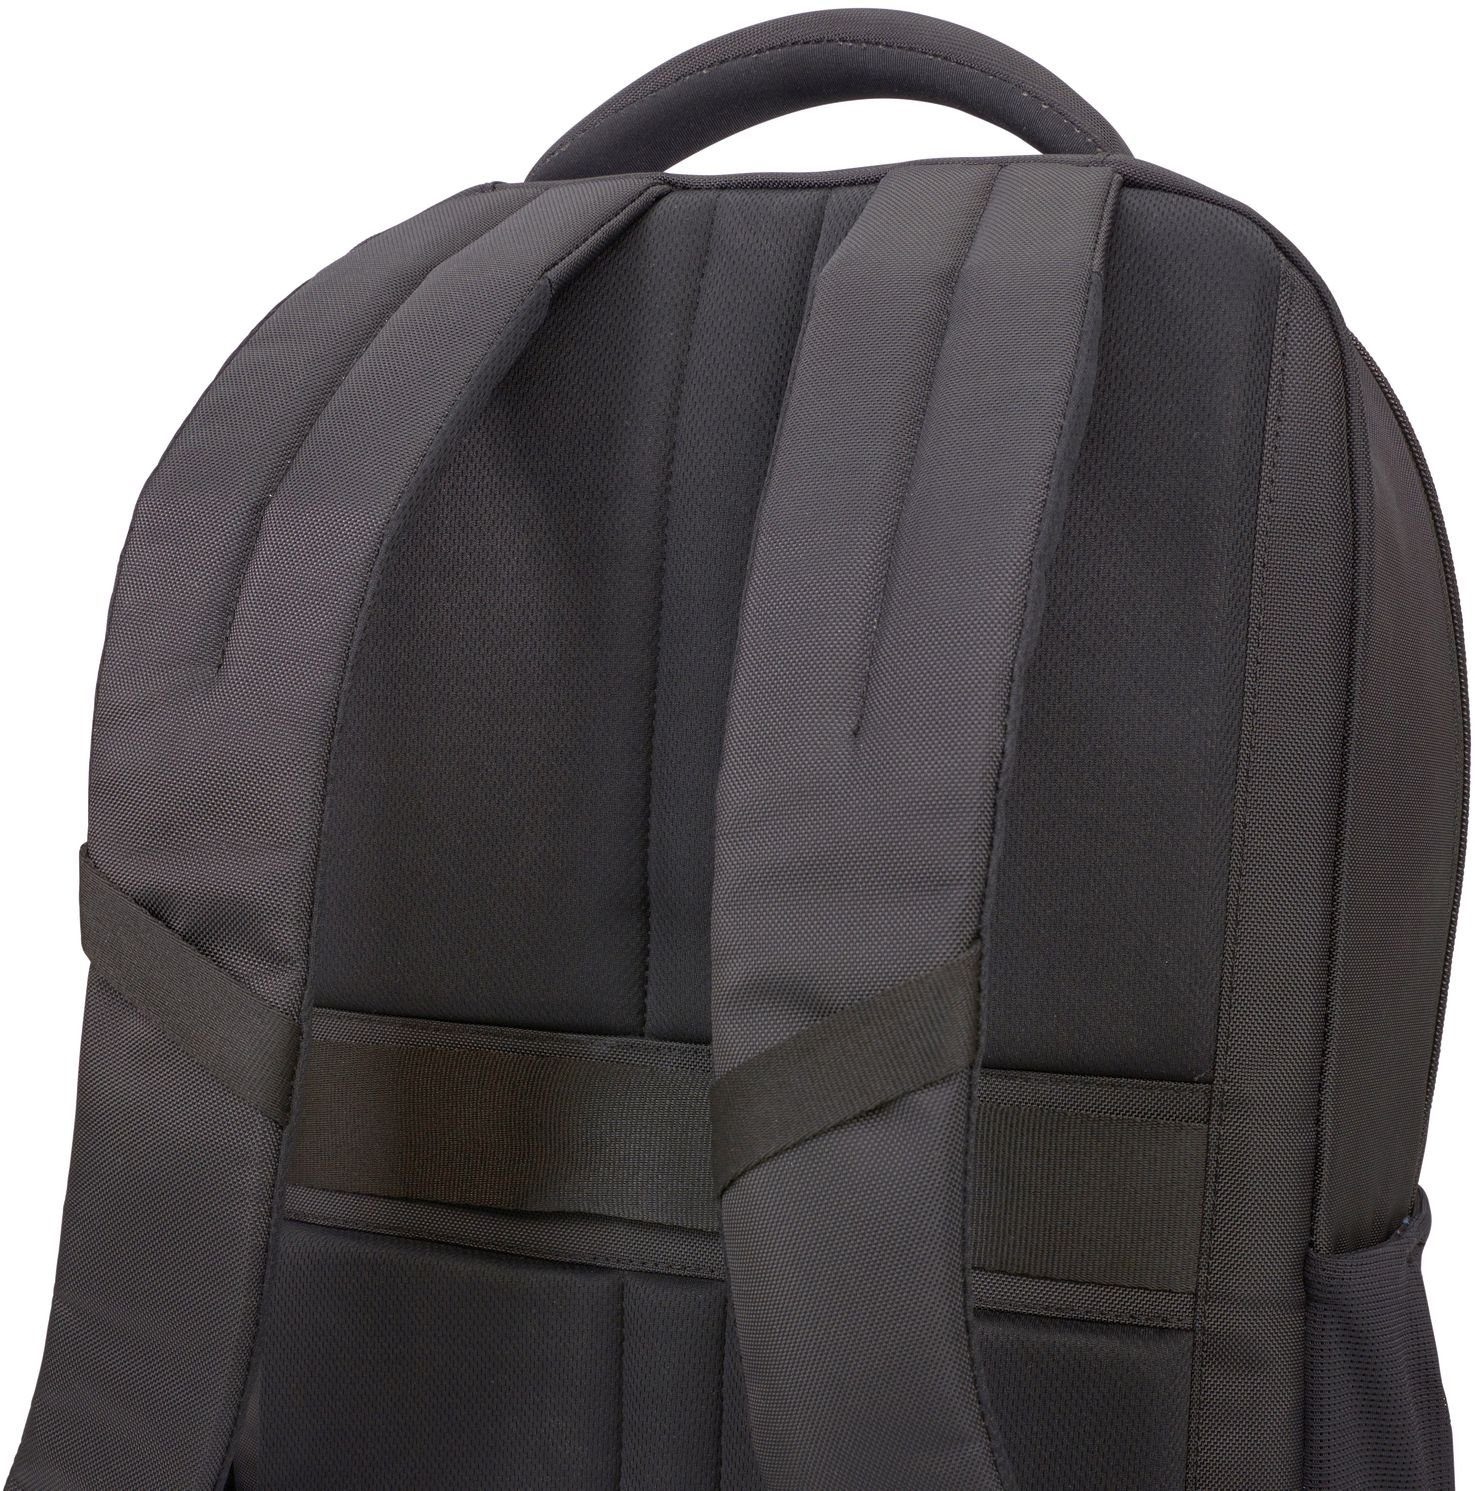 Black 15,6" Notebookrucksack Backpack Case Logic Propel